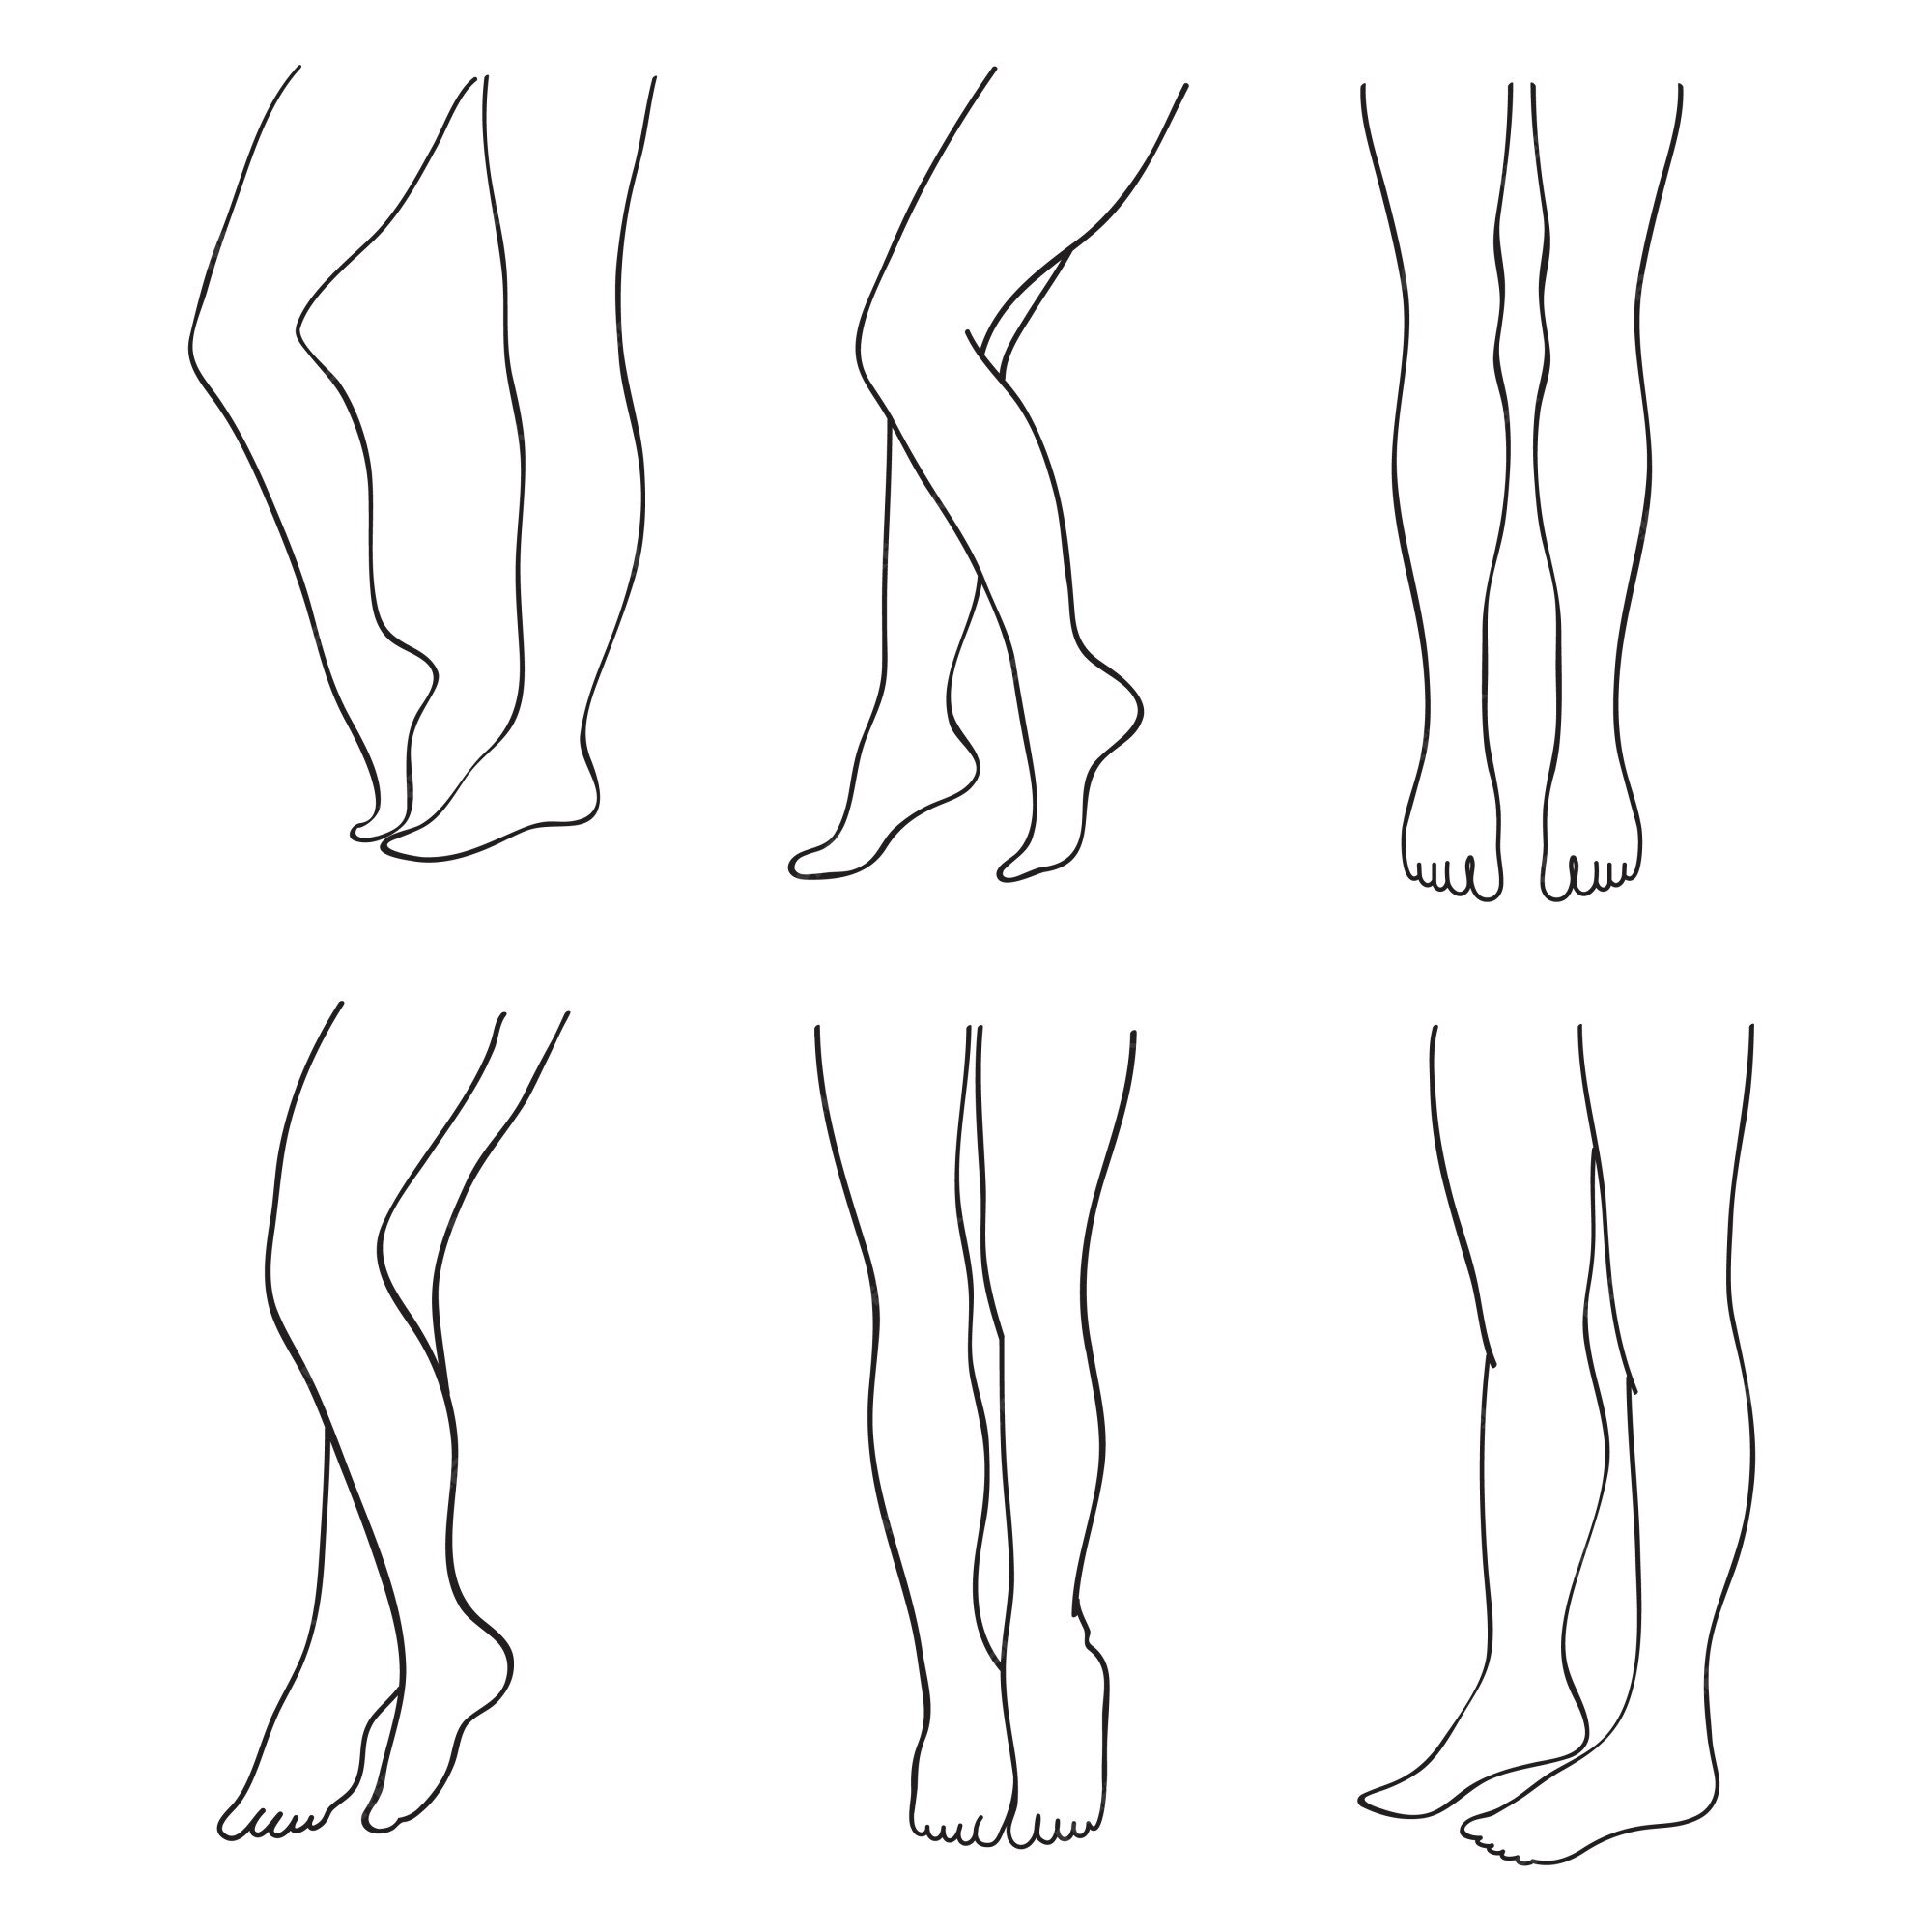 adrian lungu add how to draw sexy legs photo